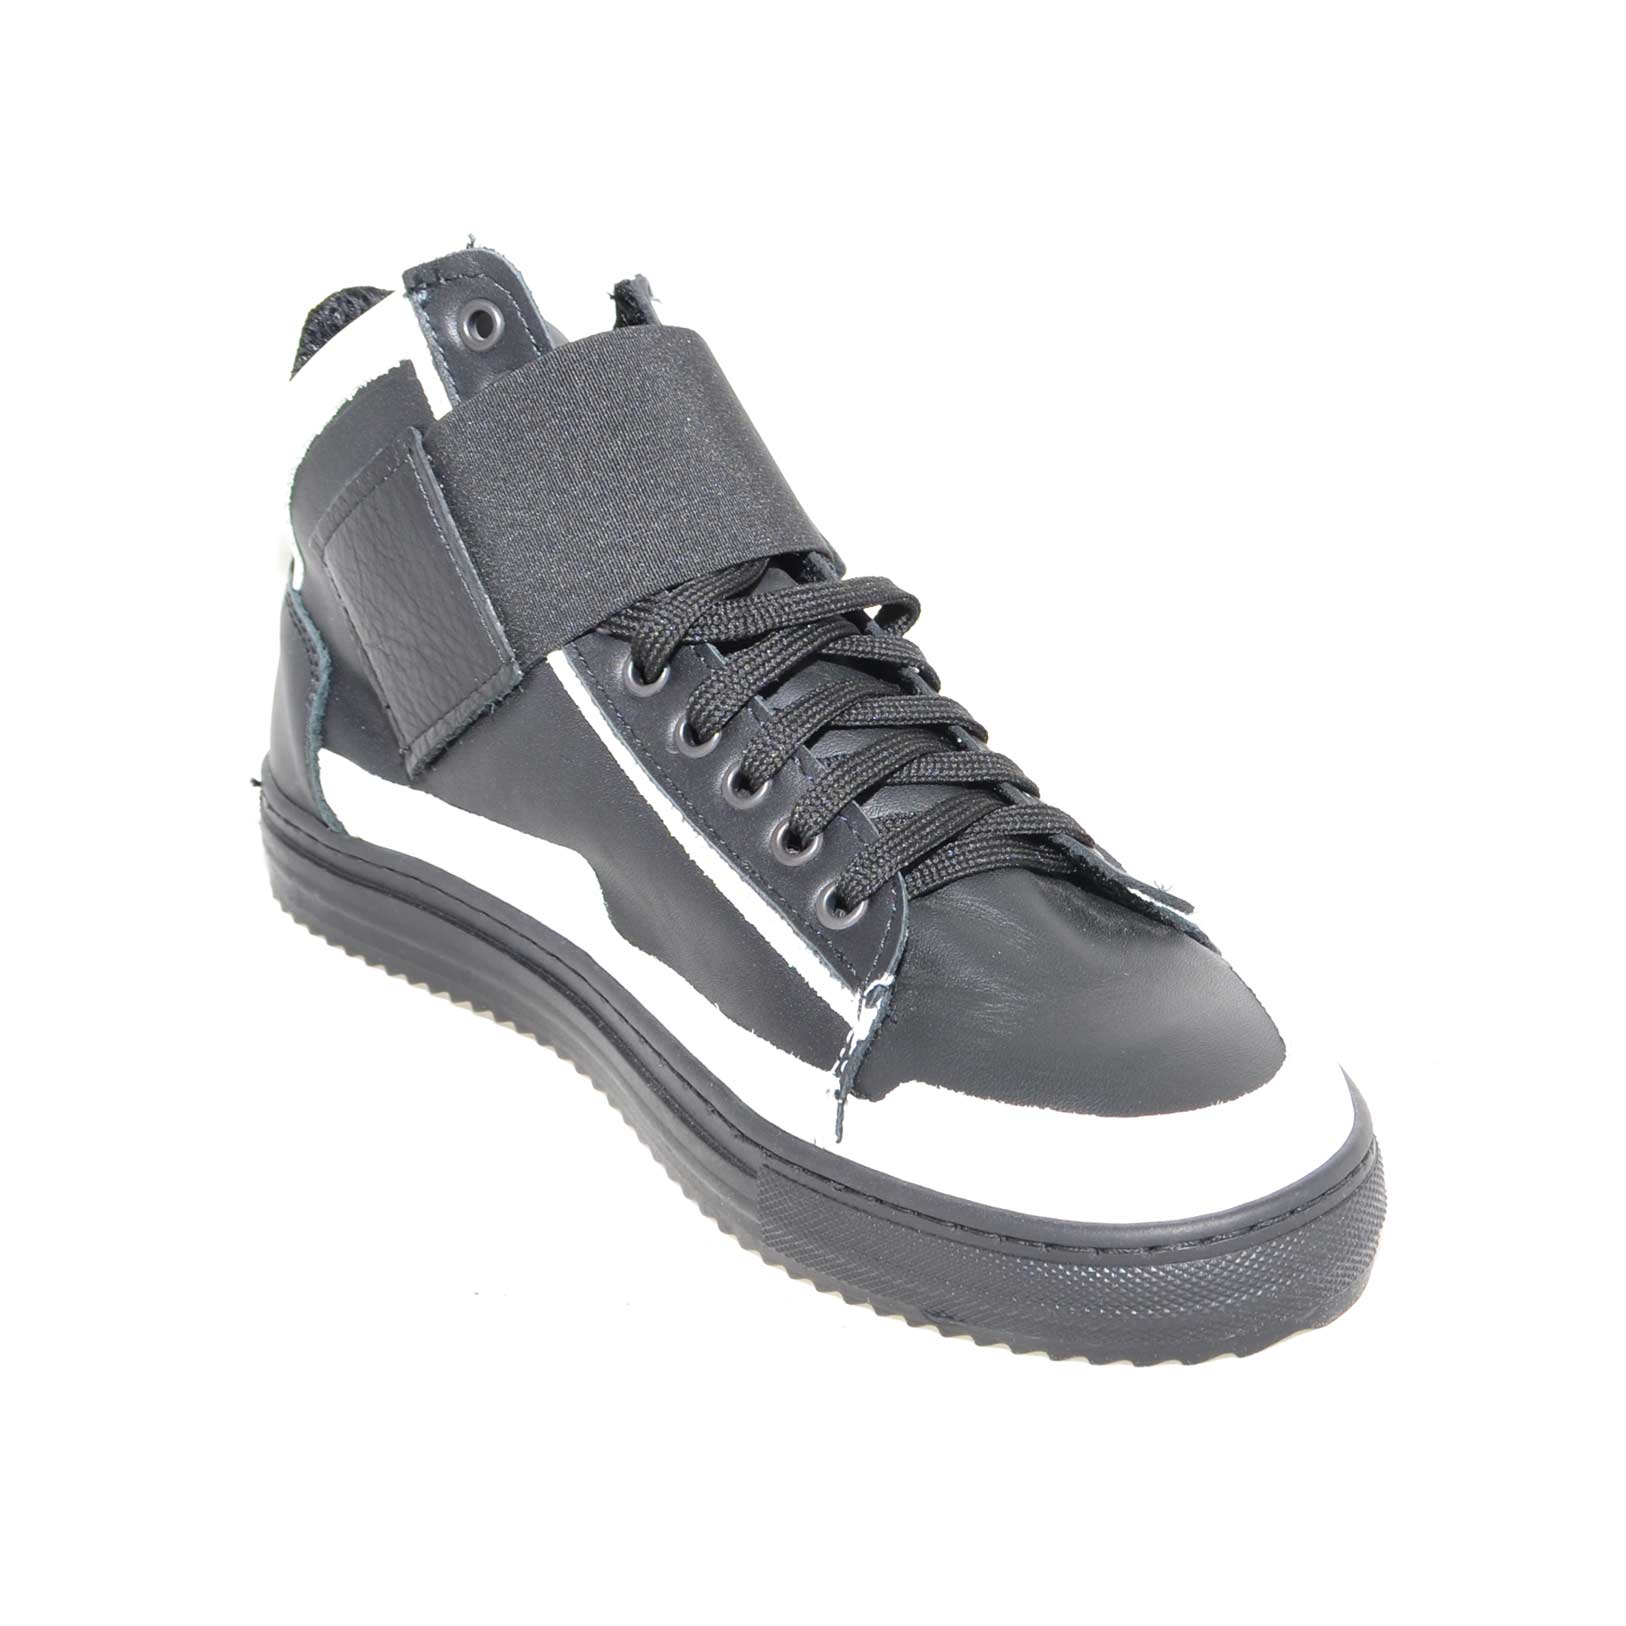 Sneakers alta art.8189 in vera pelle nero/bianco strappo ed elastico nero lacci made in italy fondo antiscivolo comfort.